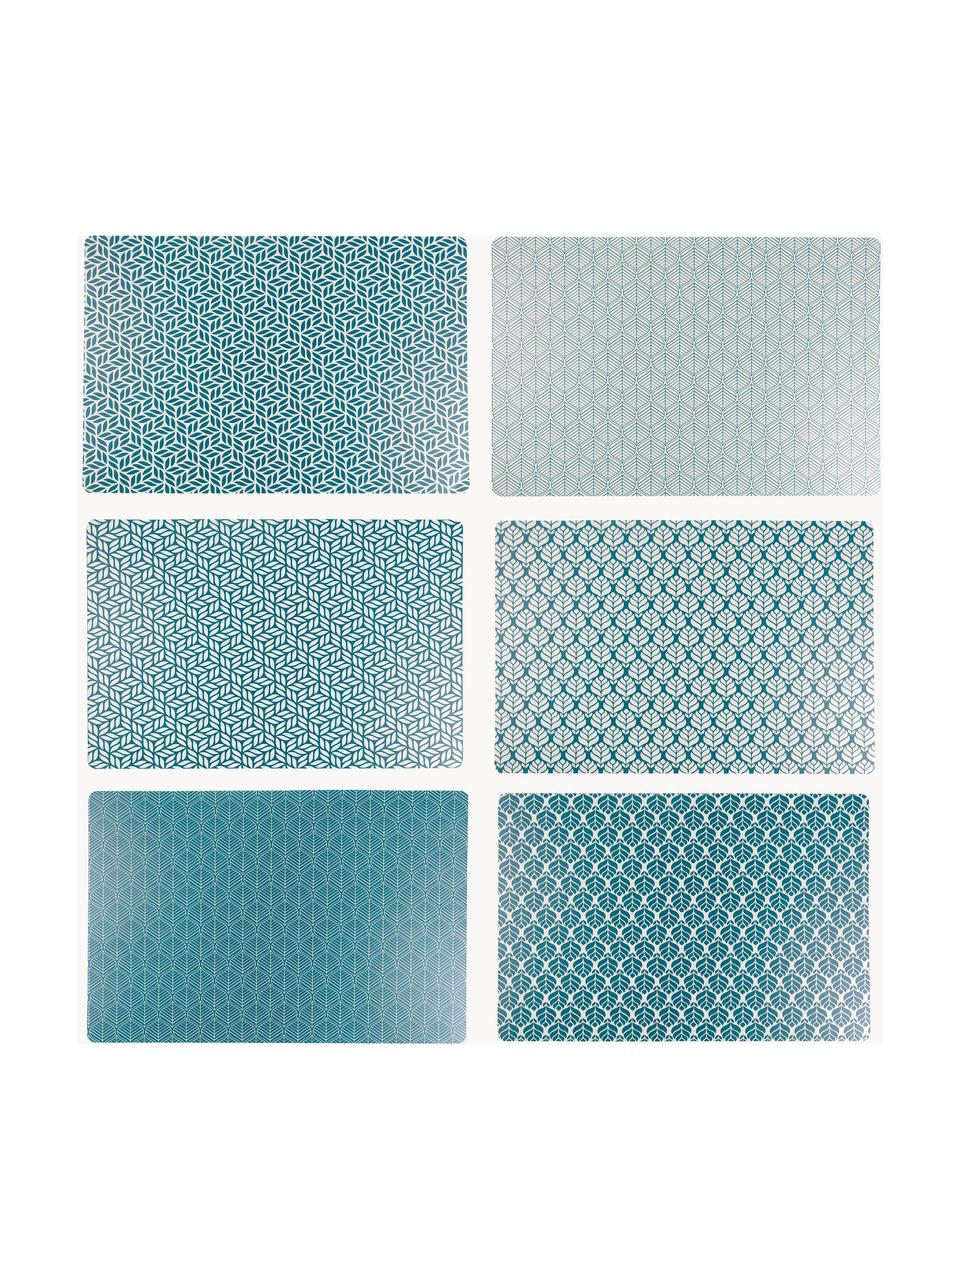 Komplet podkładek z tworzywa sztucznego  Deco Life, 6 elem., Tworzywo sztuczne, Niebieski, biały, S 30 x D 45 cm